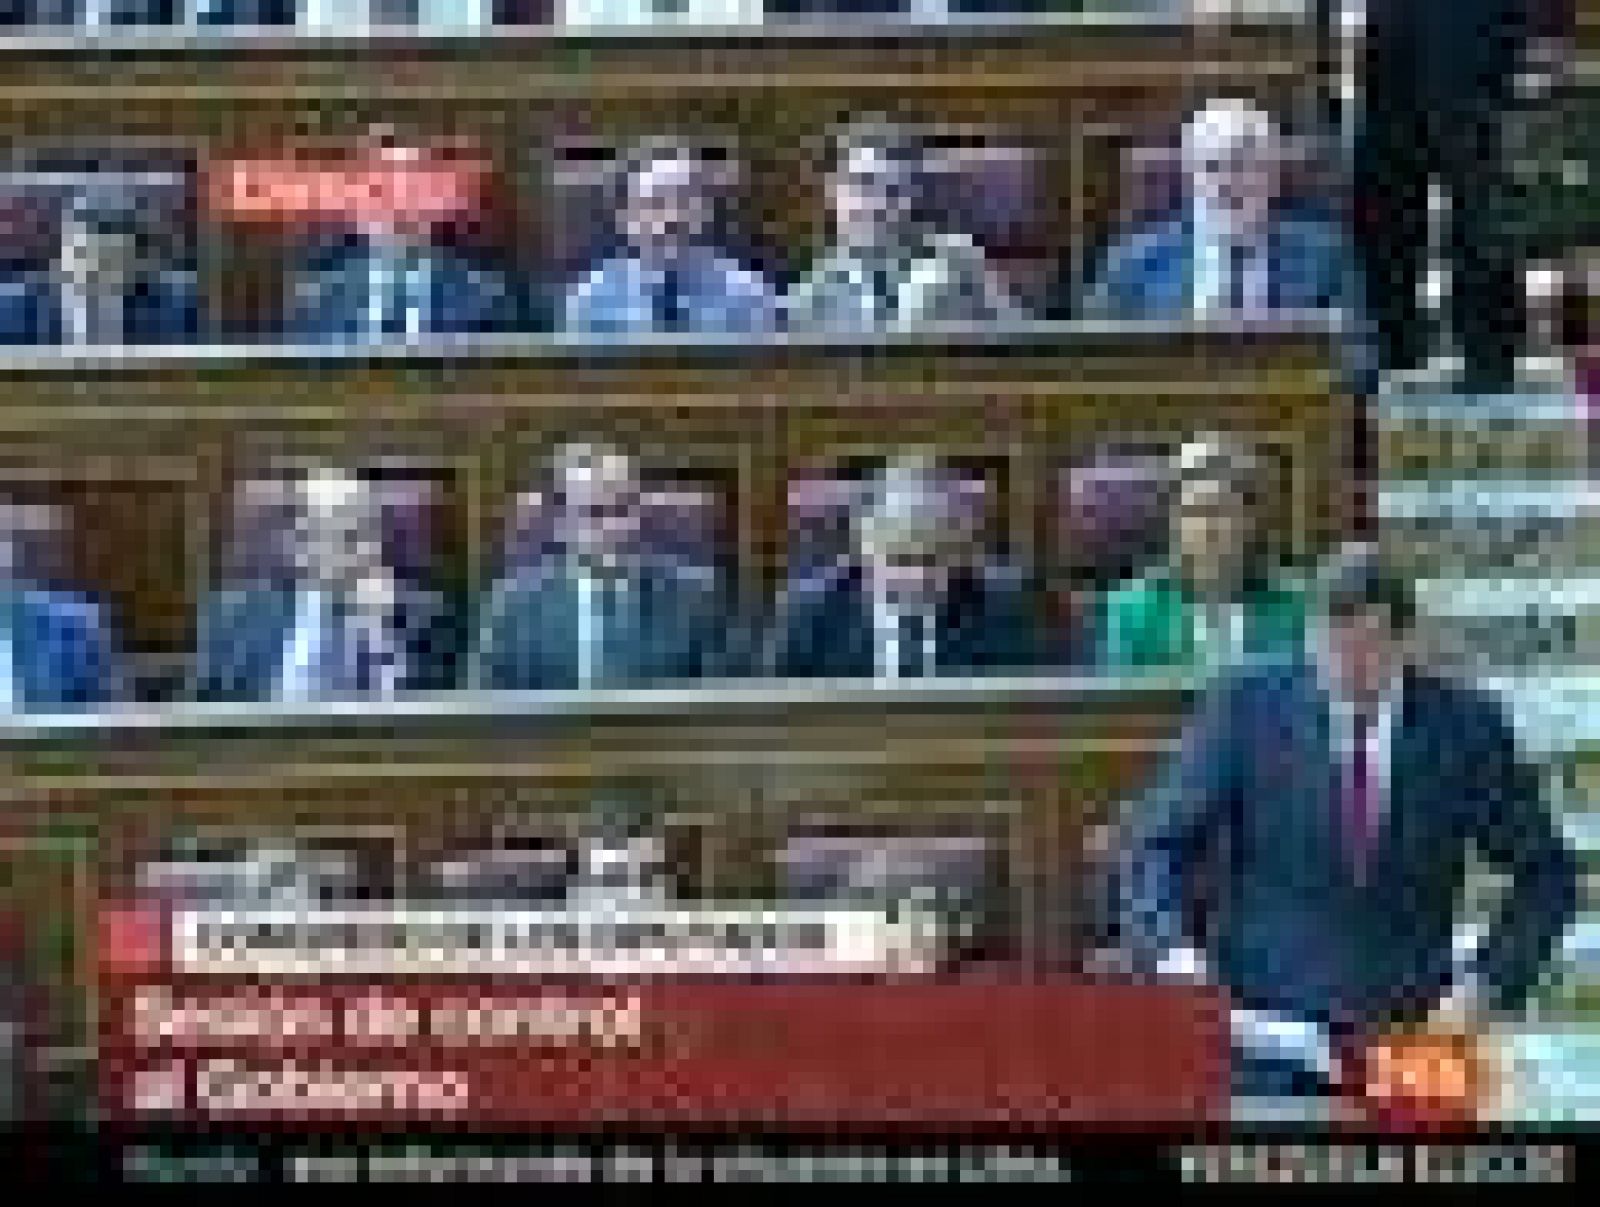  El líder del PP, Mariano Rajoy, ha vuelto a echar en cara al presidente del Gobierno, José Luis Rodríguez Zapatero, que no dice la verdad cuando éste ha hablado de una "leve recuperación" de la economía española para la segunda mitad de este año. "Los españoles tienen derecho a que les diga la verdad de lo que eatá pasando", le ha espetado.